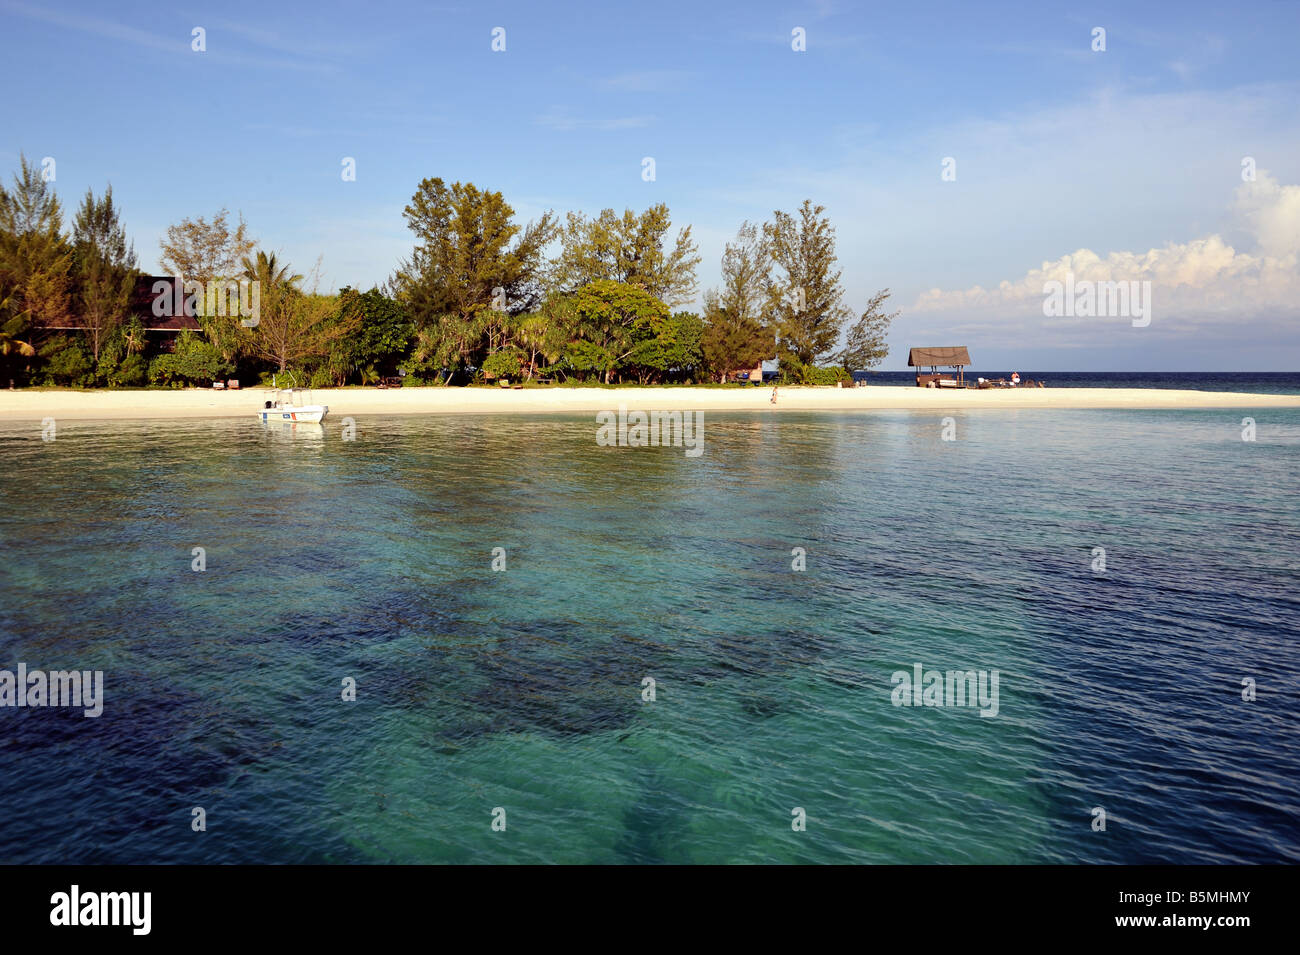 Plage de sable fin sur Lankayan Island montrant l'eau claire, de ciel bleu et de la végétation et un petit bateau amarré. Banque D'Images